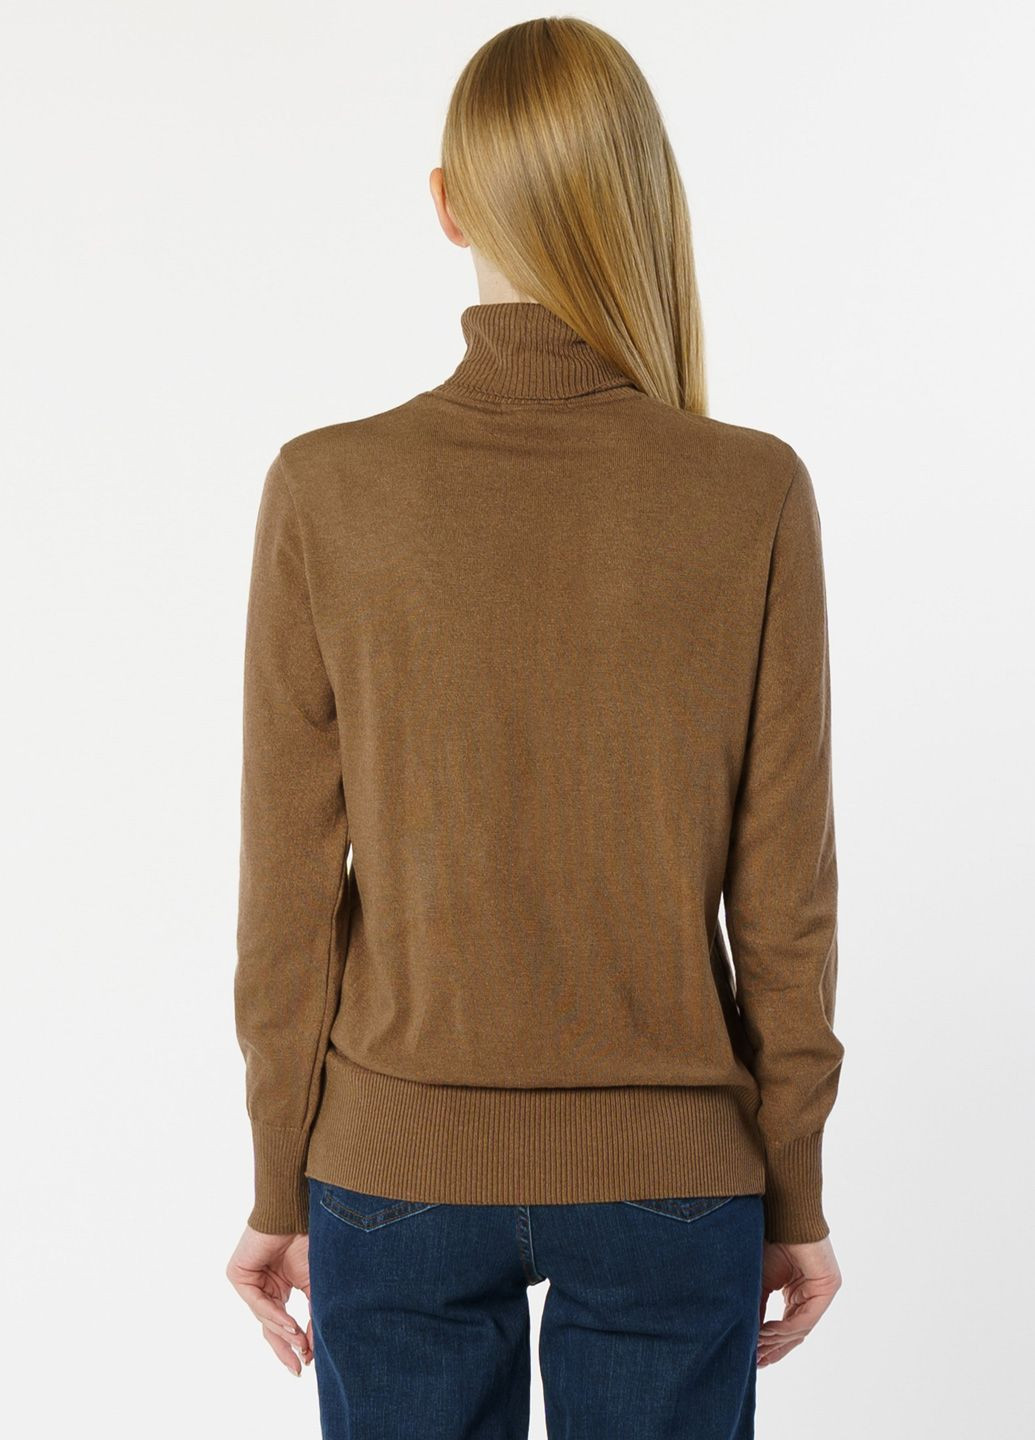 Коричневый зимний свитер женский коричневый Arber Roll-neck WCaddy WTR-139